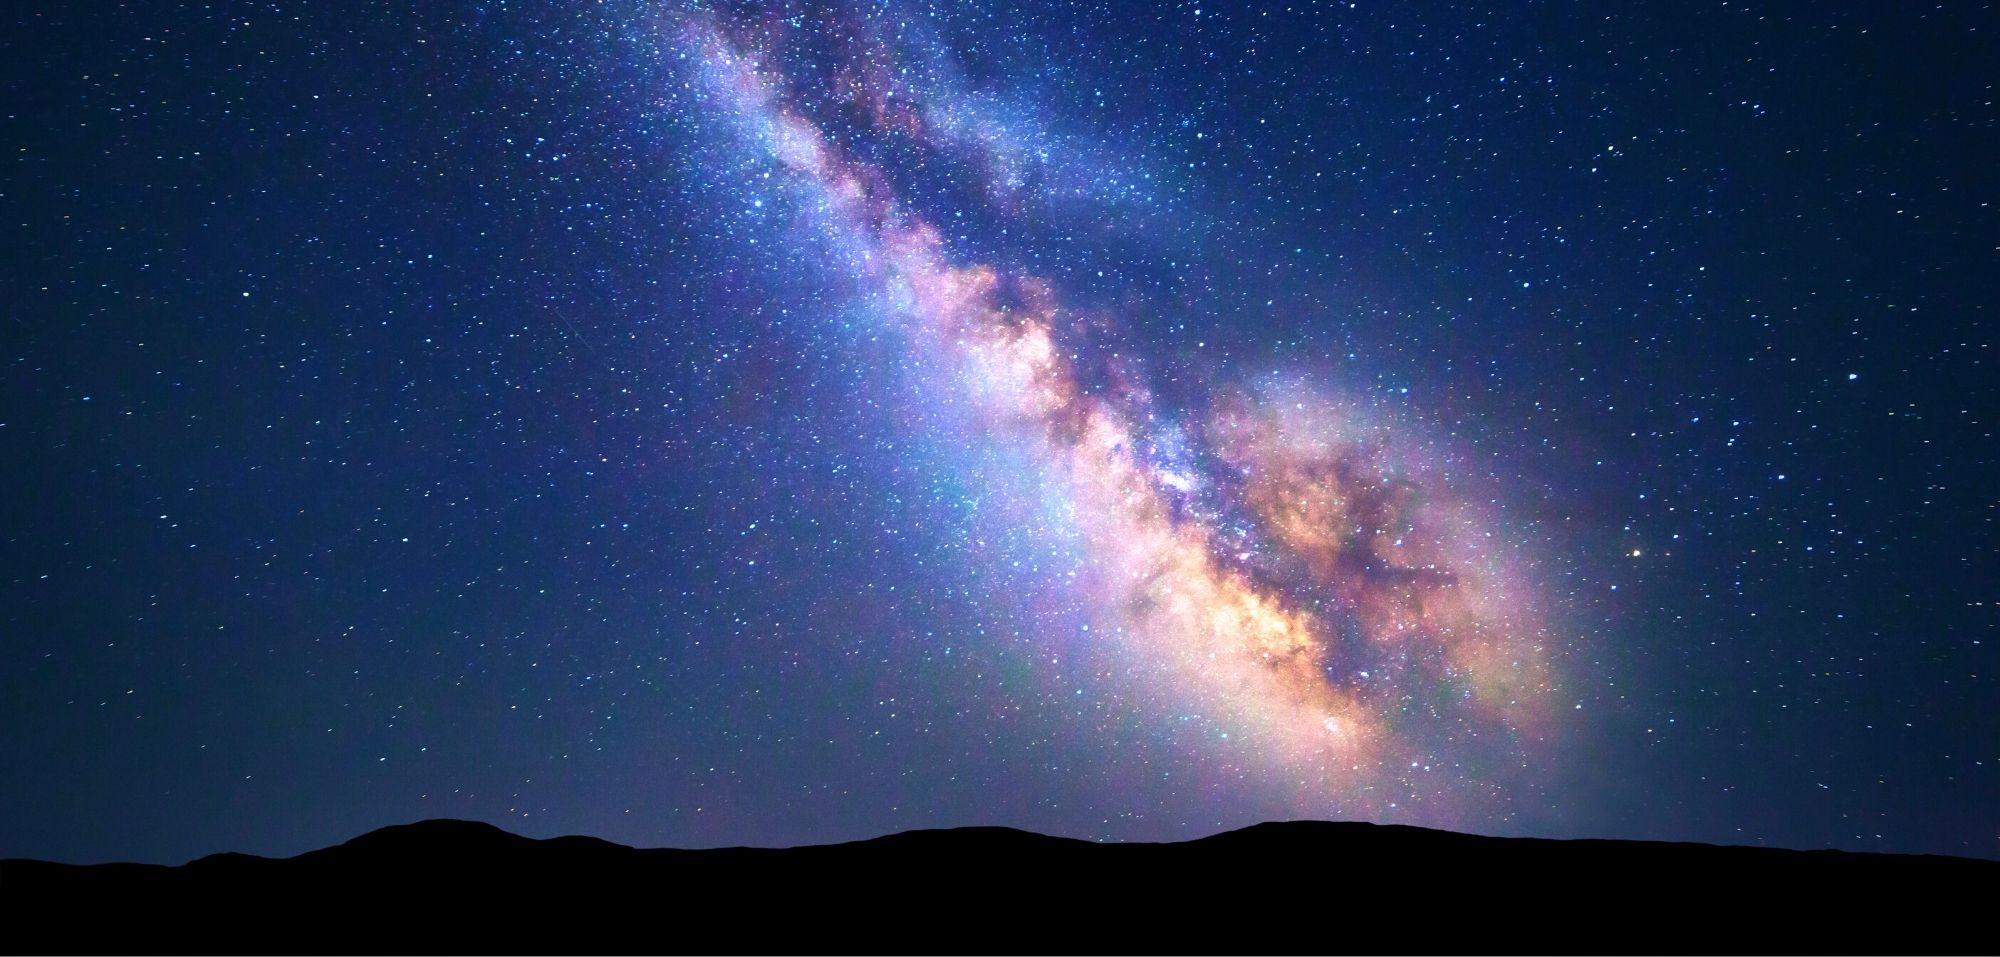 Milchstraße Forscher Entdecken Etwas Neues Futurezone